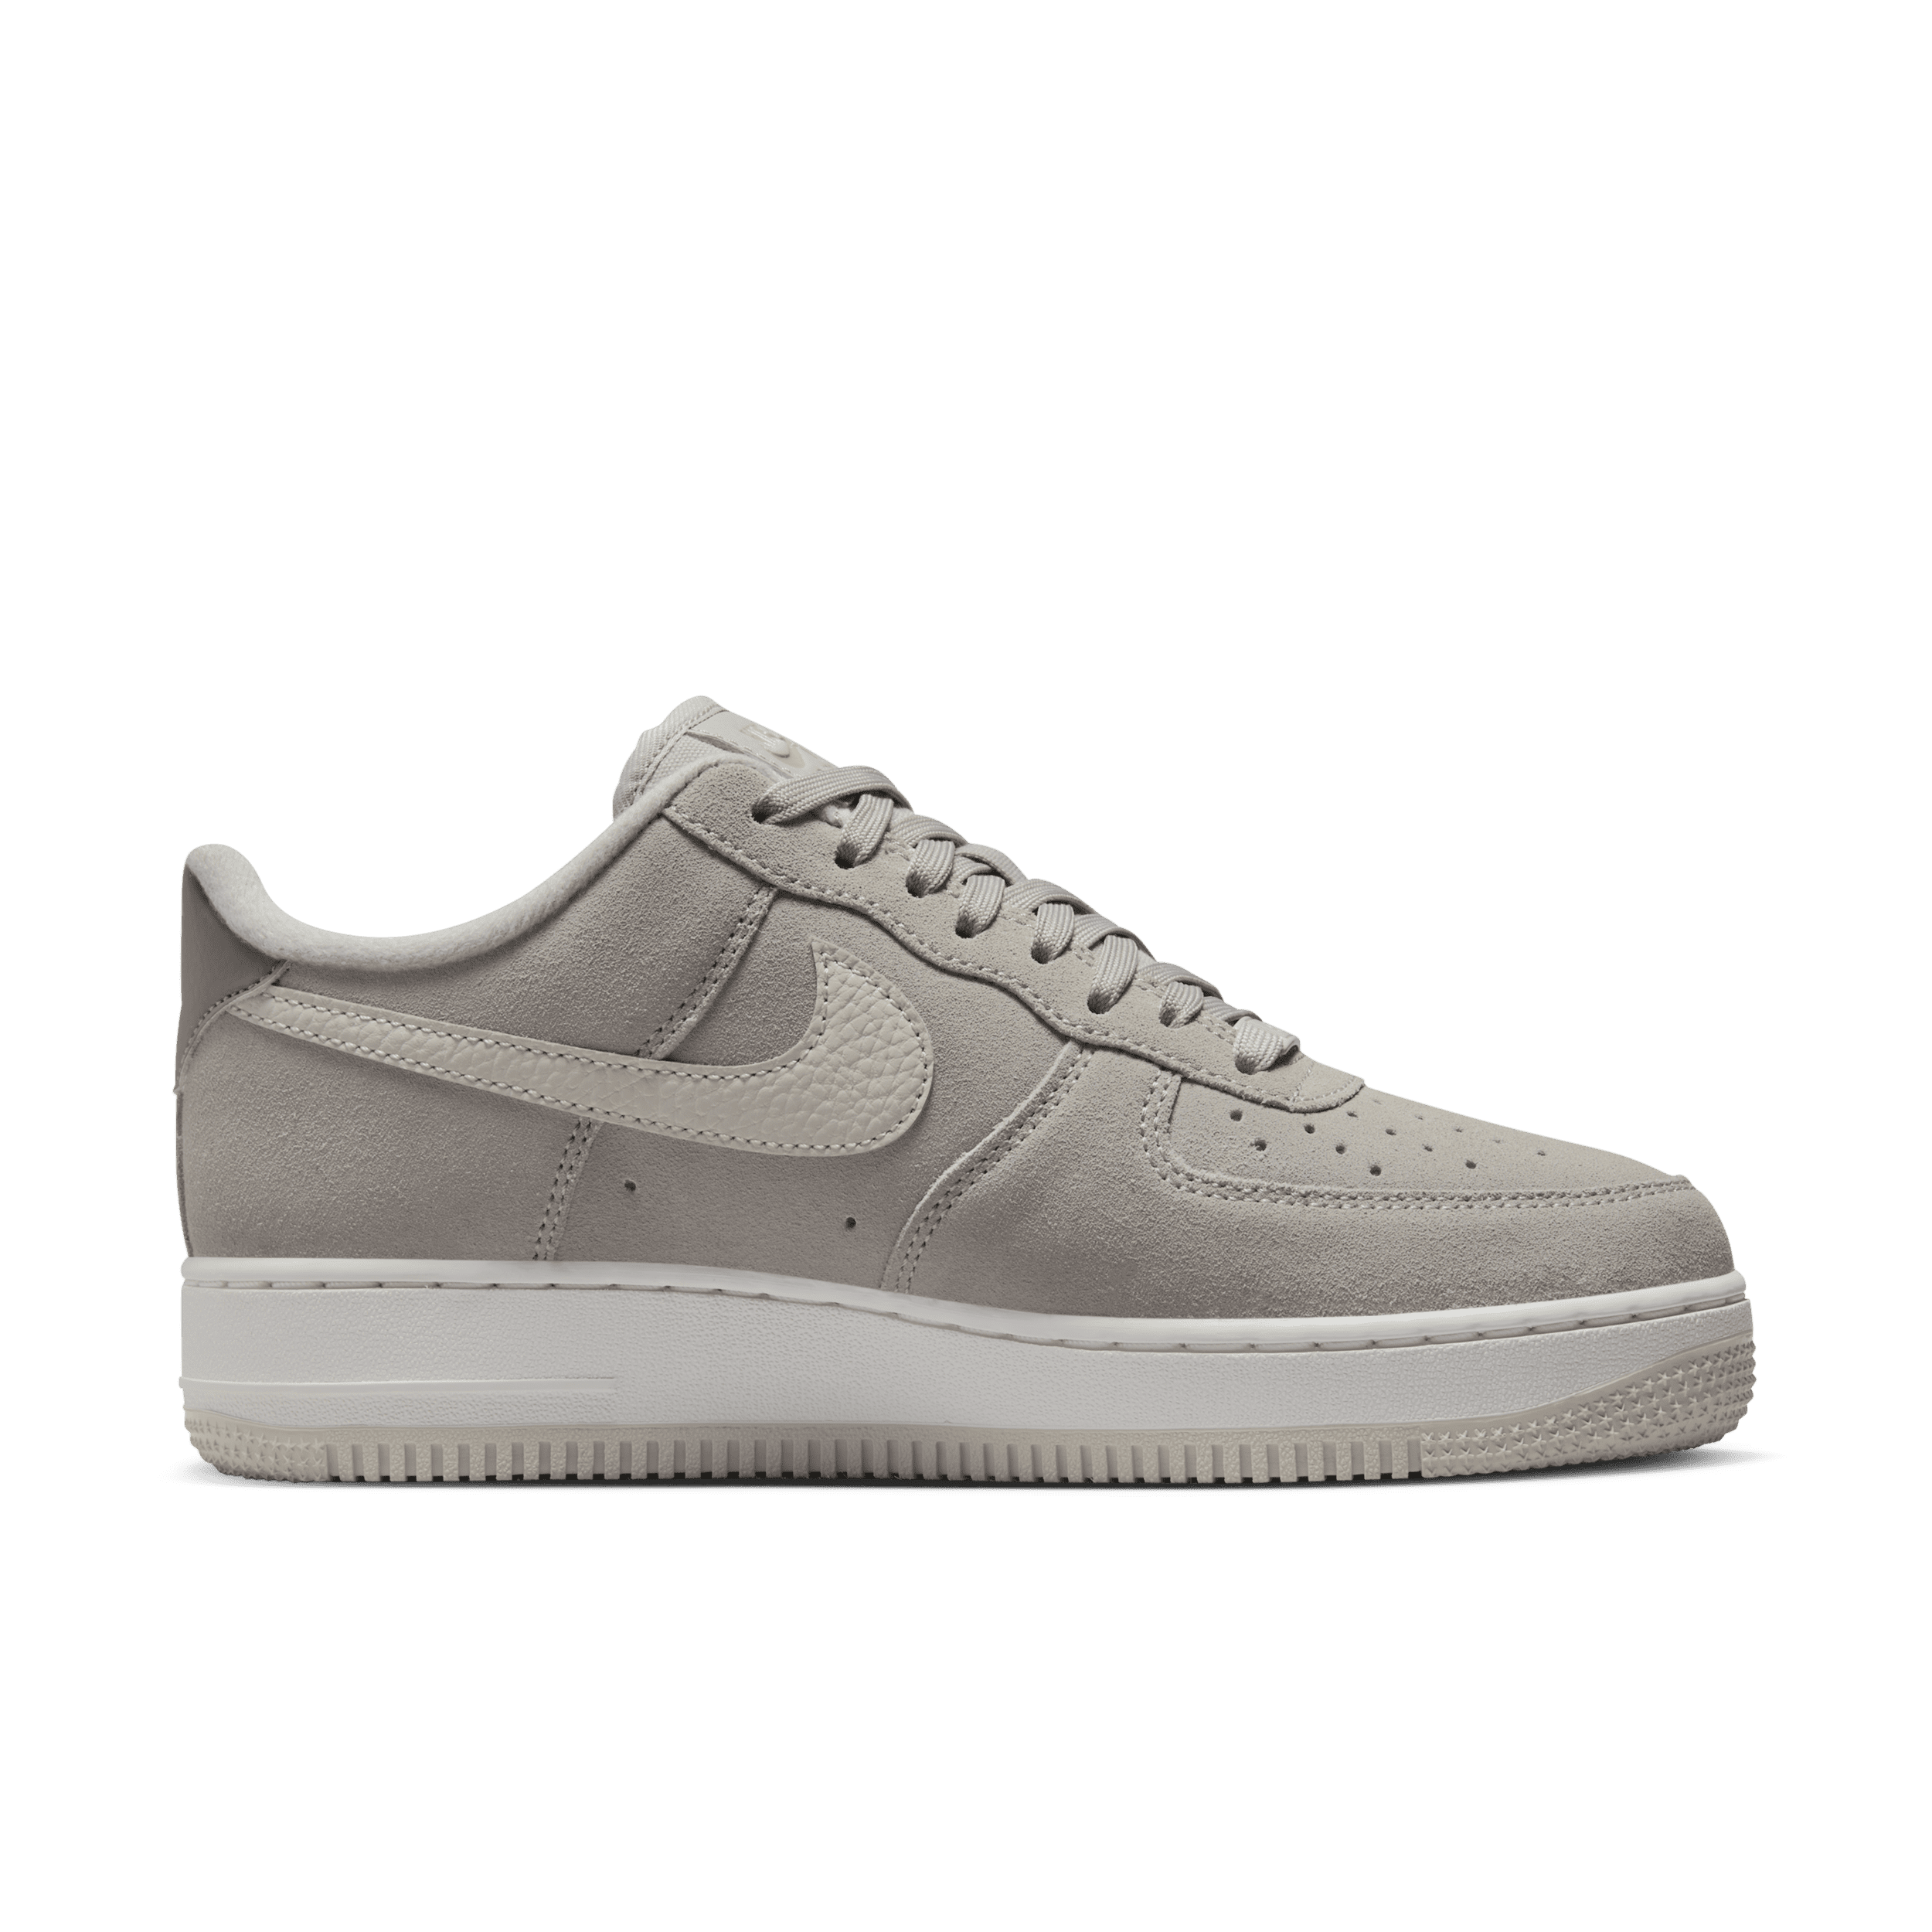 Nike Air Force 1 Low ’07 Damenschuh - Grau